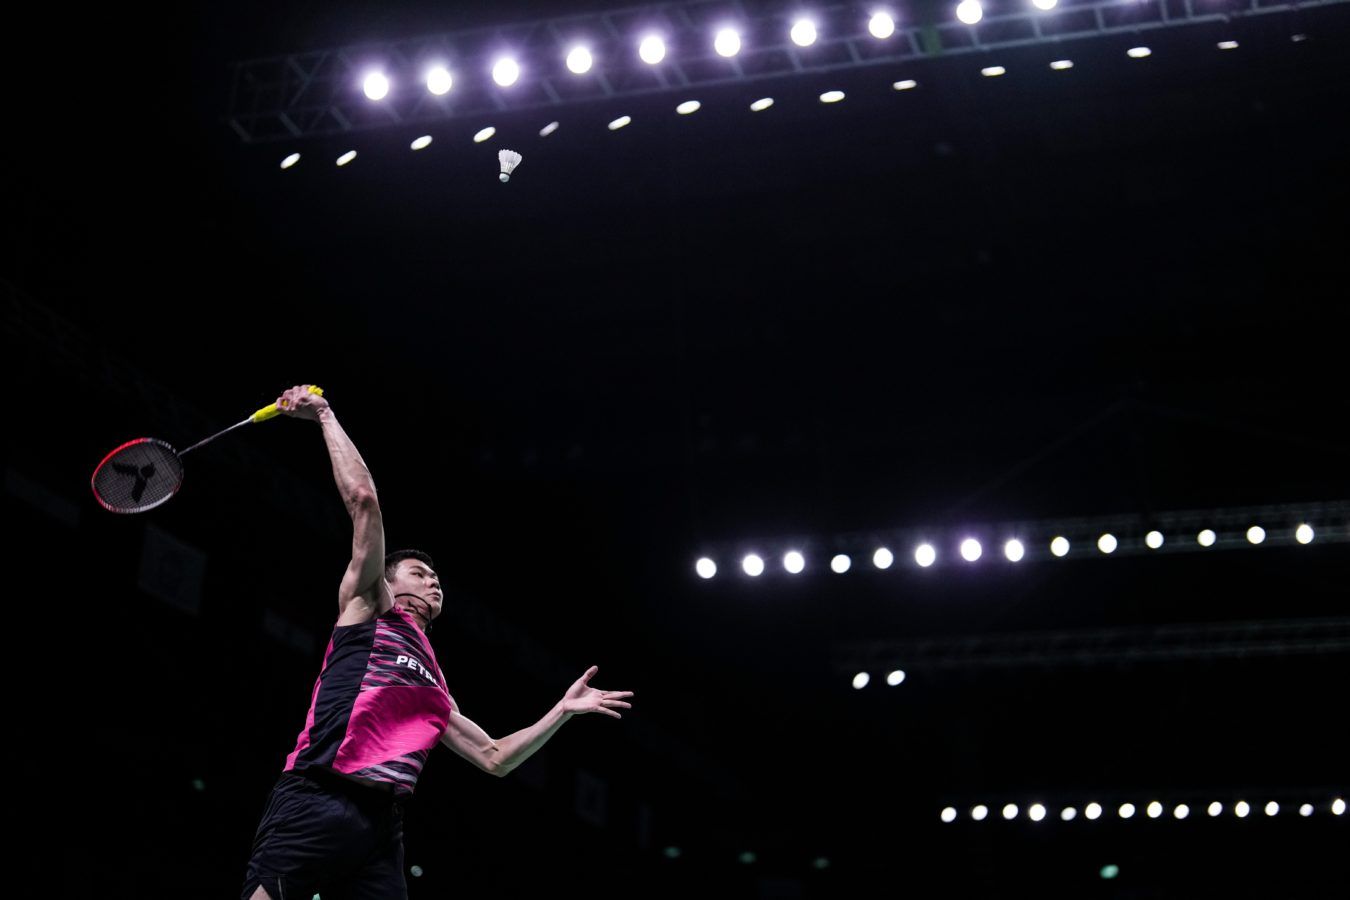 Lee Zii Jia pips Li Shi Feng to the 2022 Thailand Open men’s singles title